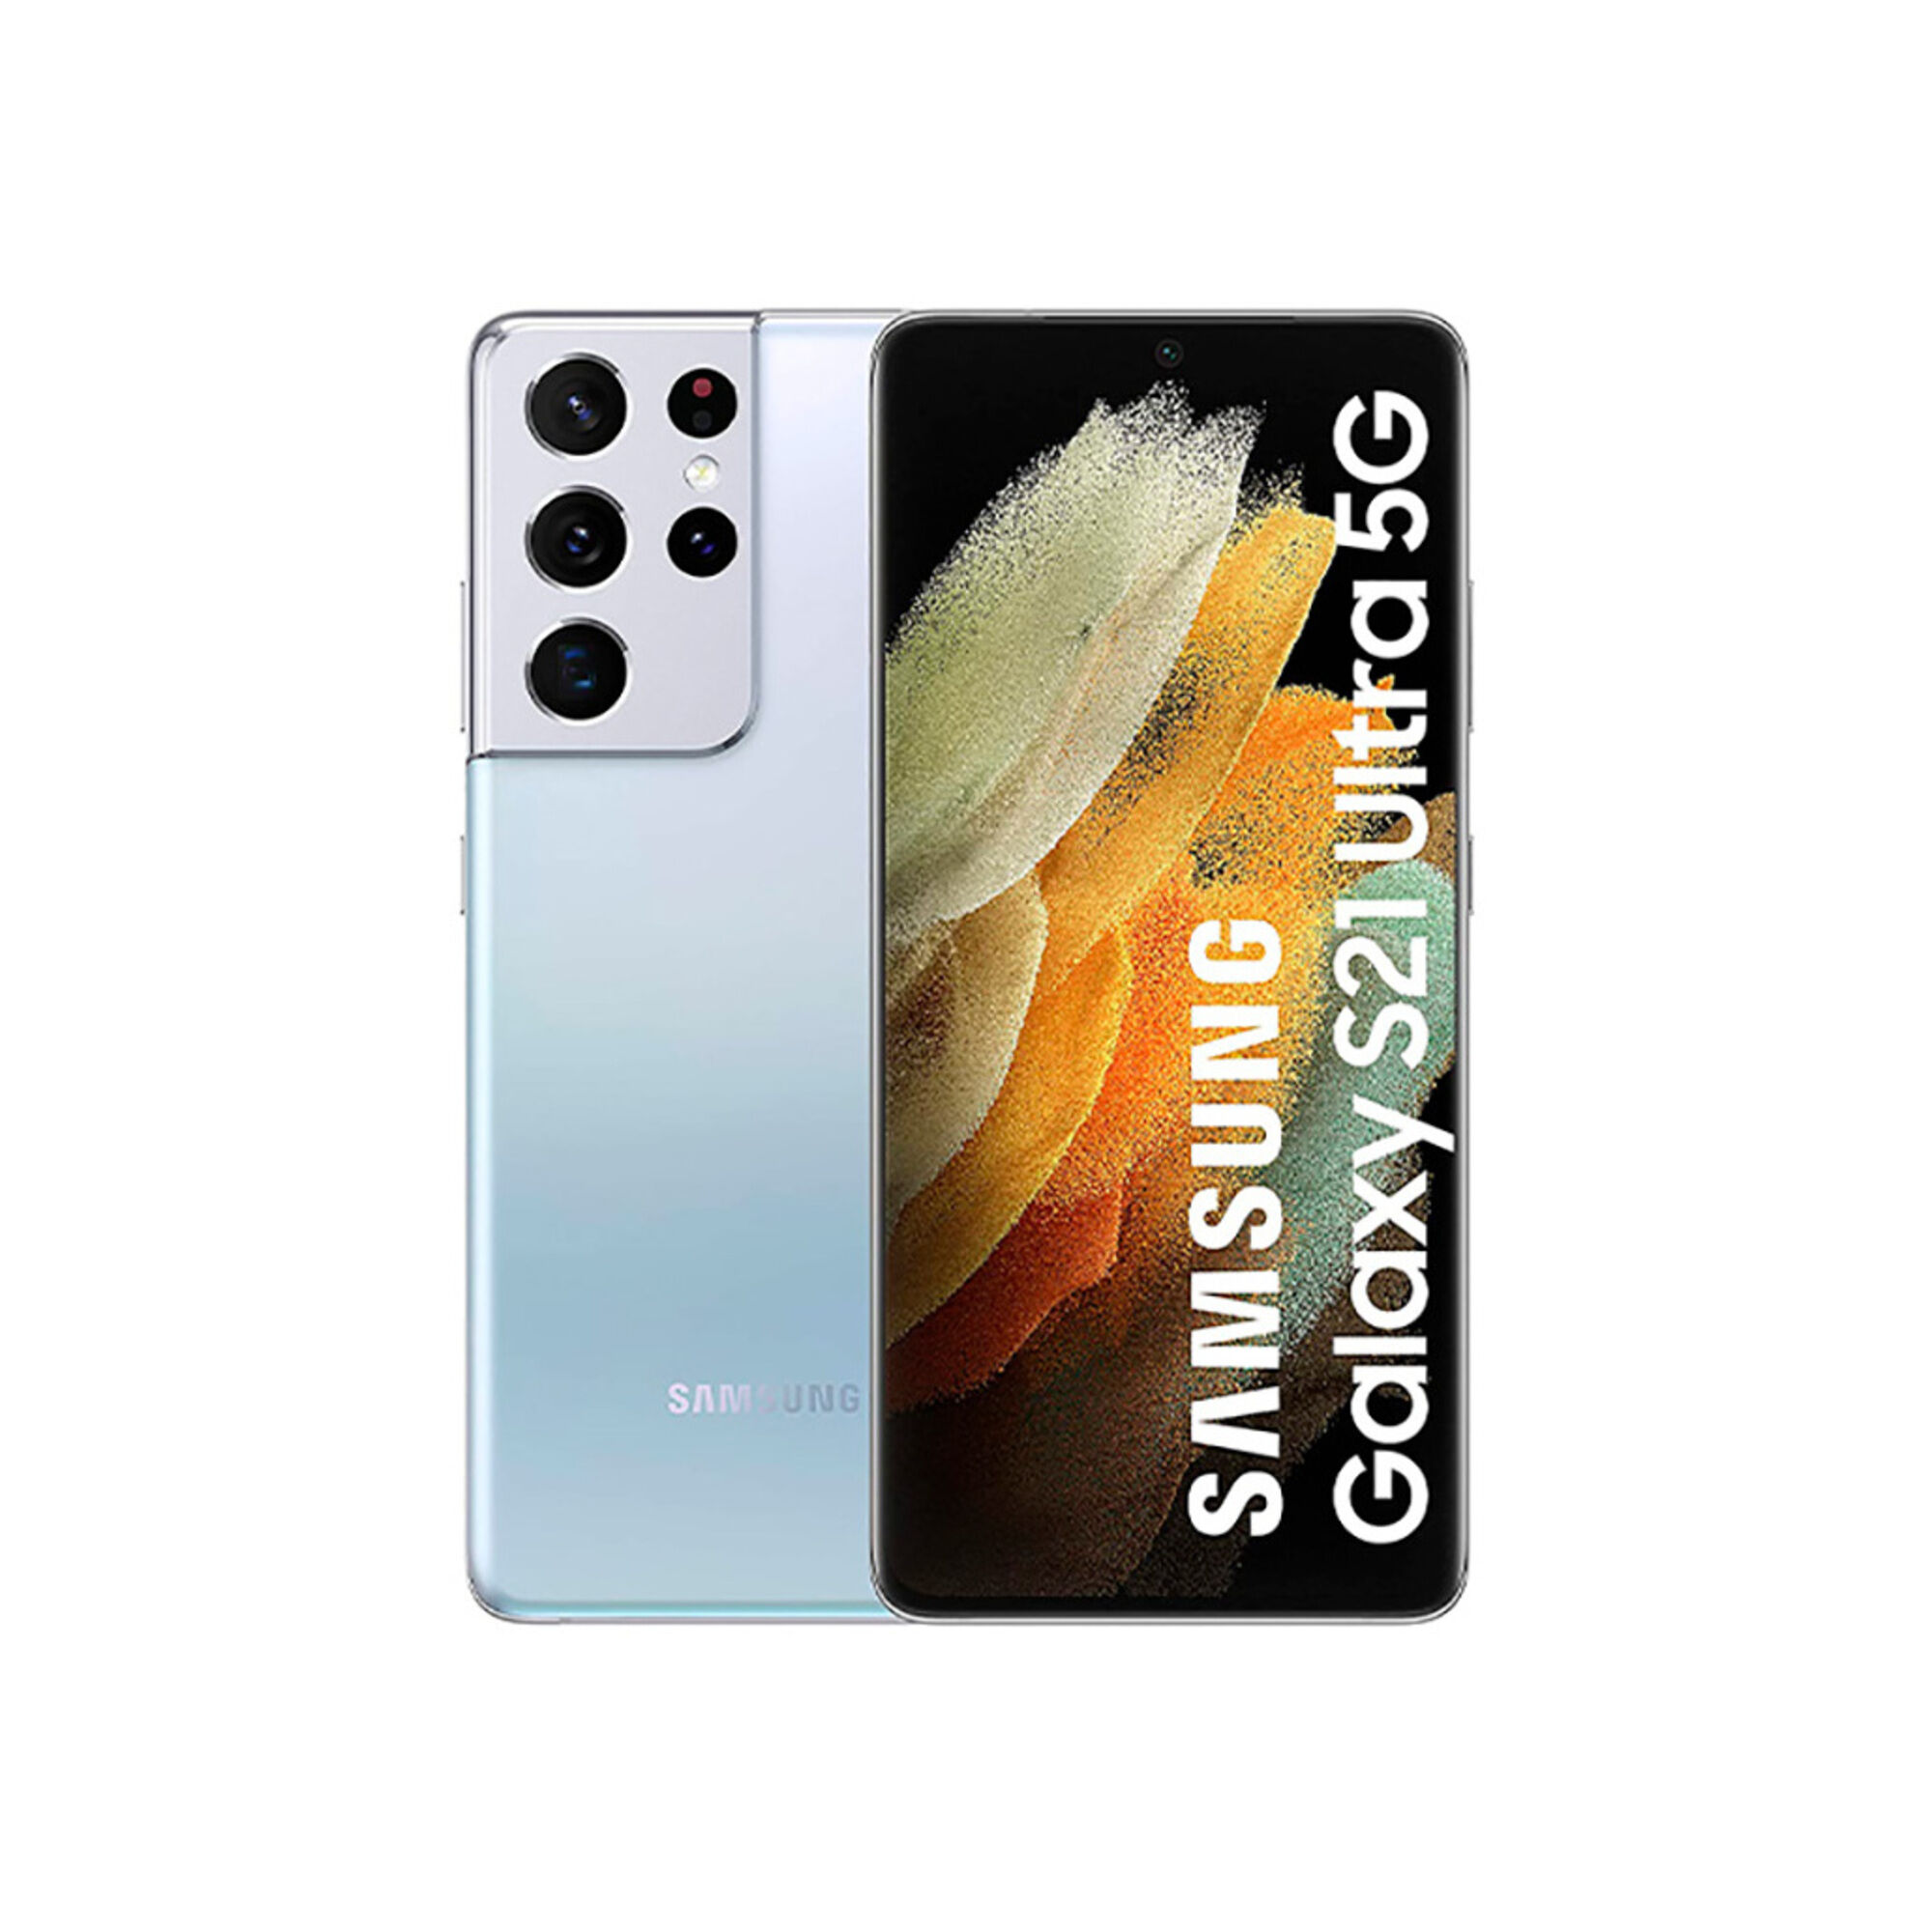 Samsung Galaxy S21 Ultra 5G 128 Go, Argent, débloqué - Reconditionné